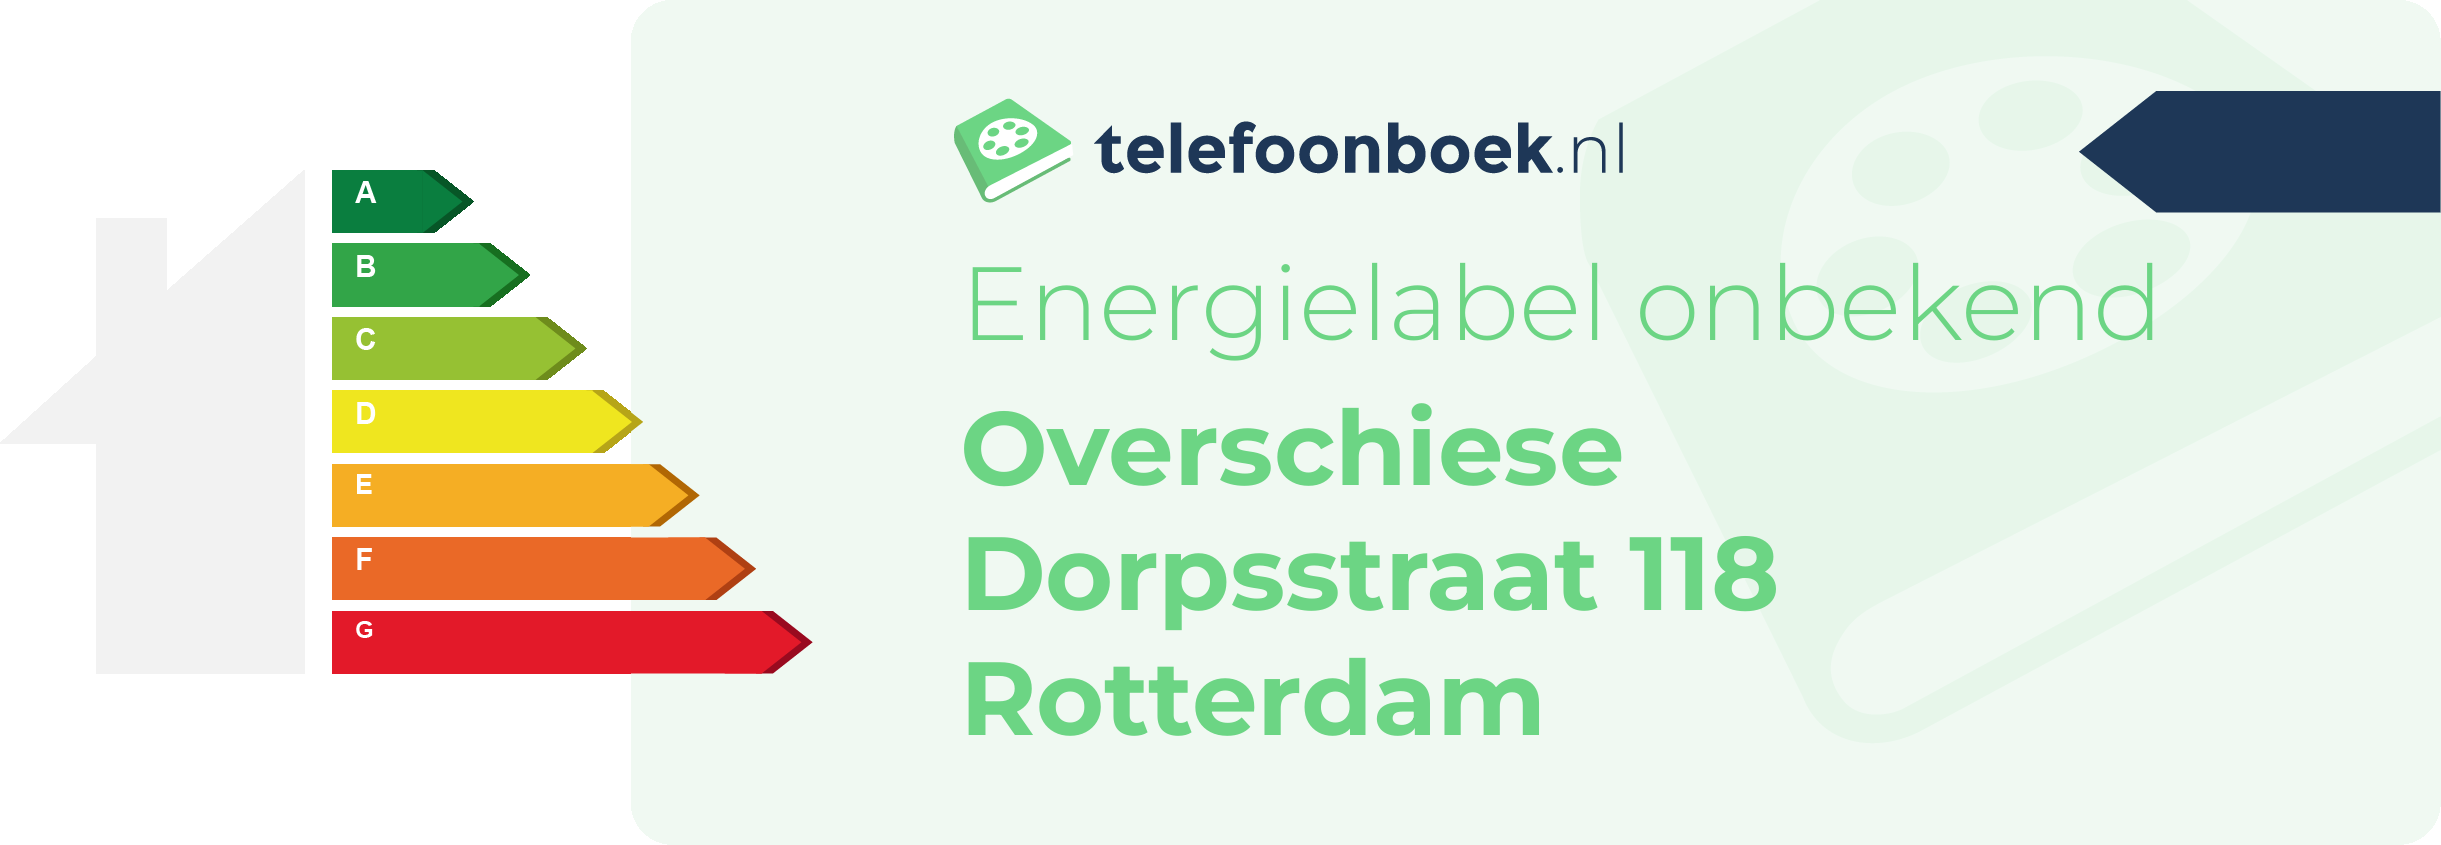 Energielabel Overschiese Dorpsstraat 118 Rotterdam